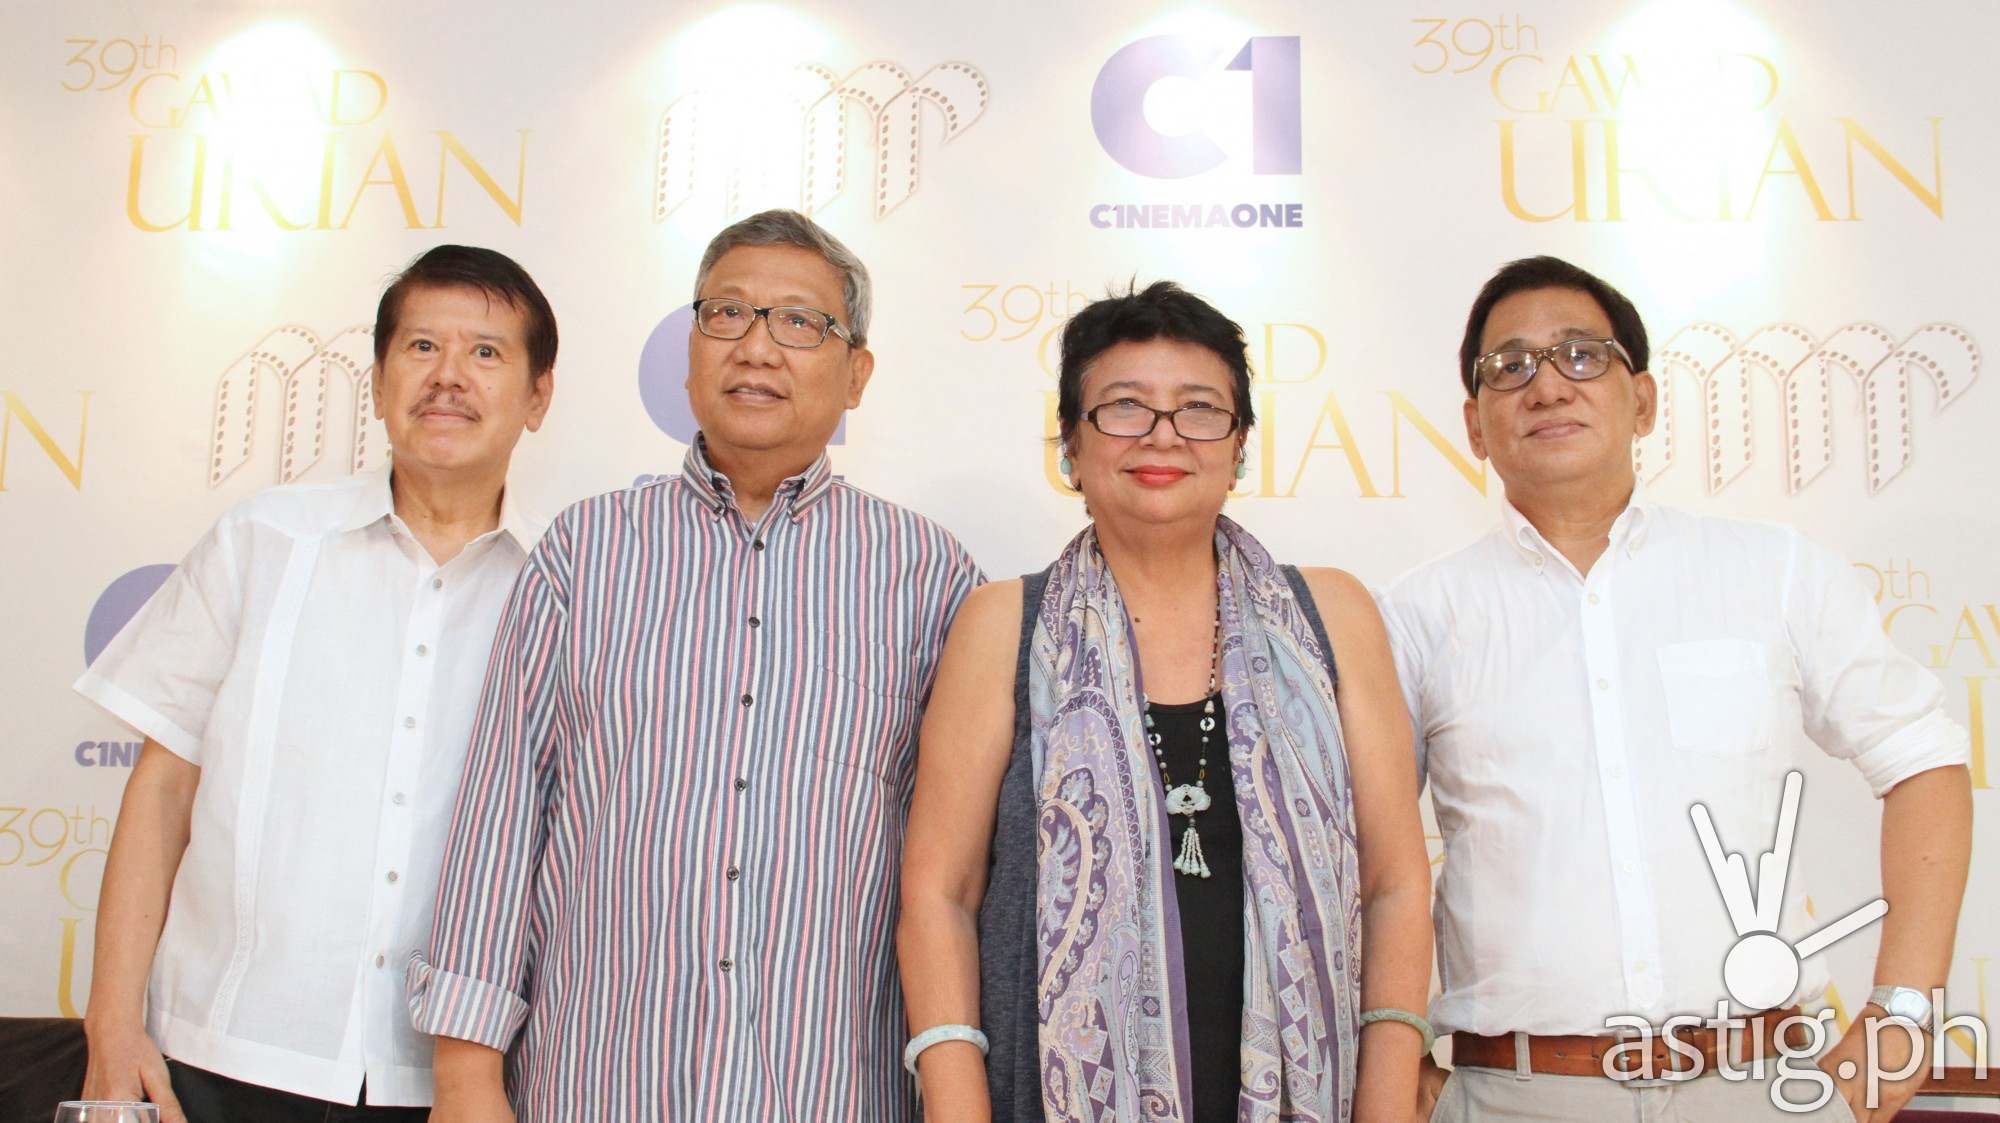 In photo (l-r) Manunuri ng Pelikulang Pilipino (MPP) members Mario Hernando, Nic Tiongson, Grace Alfonso, and Tito Valiente